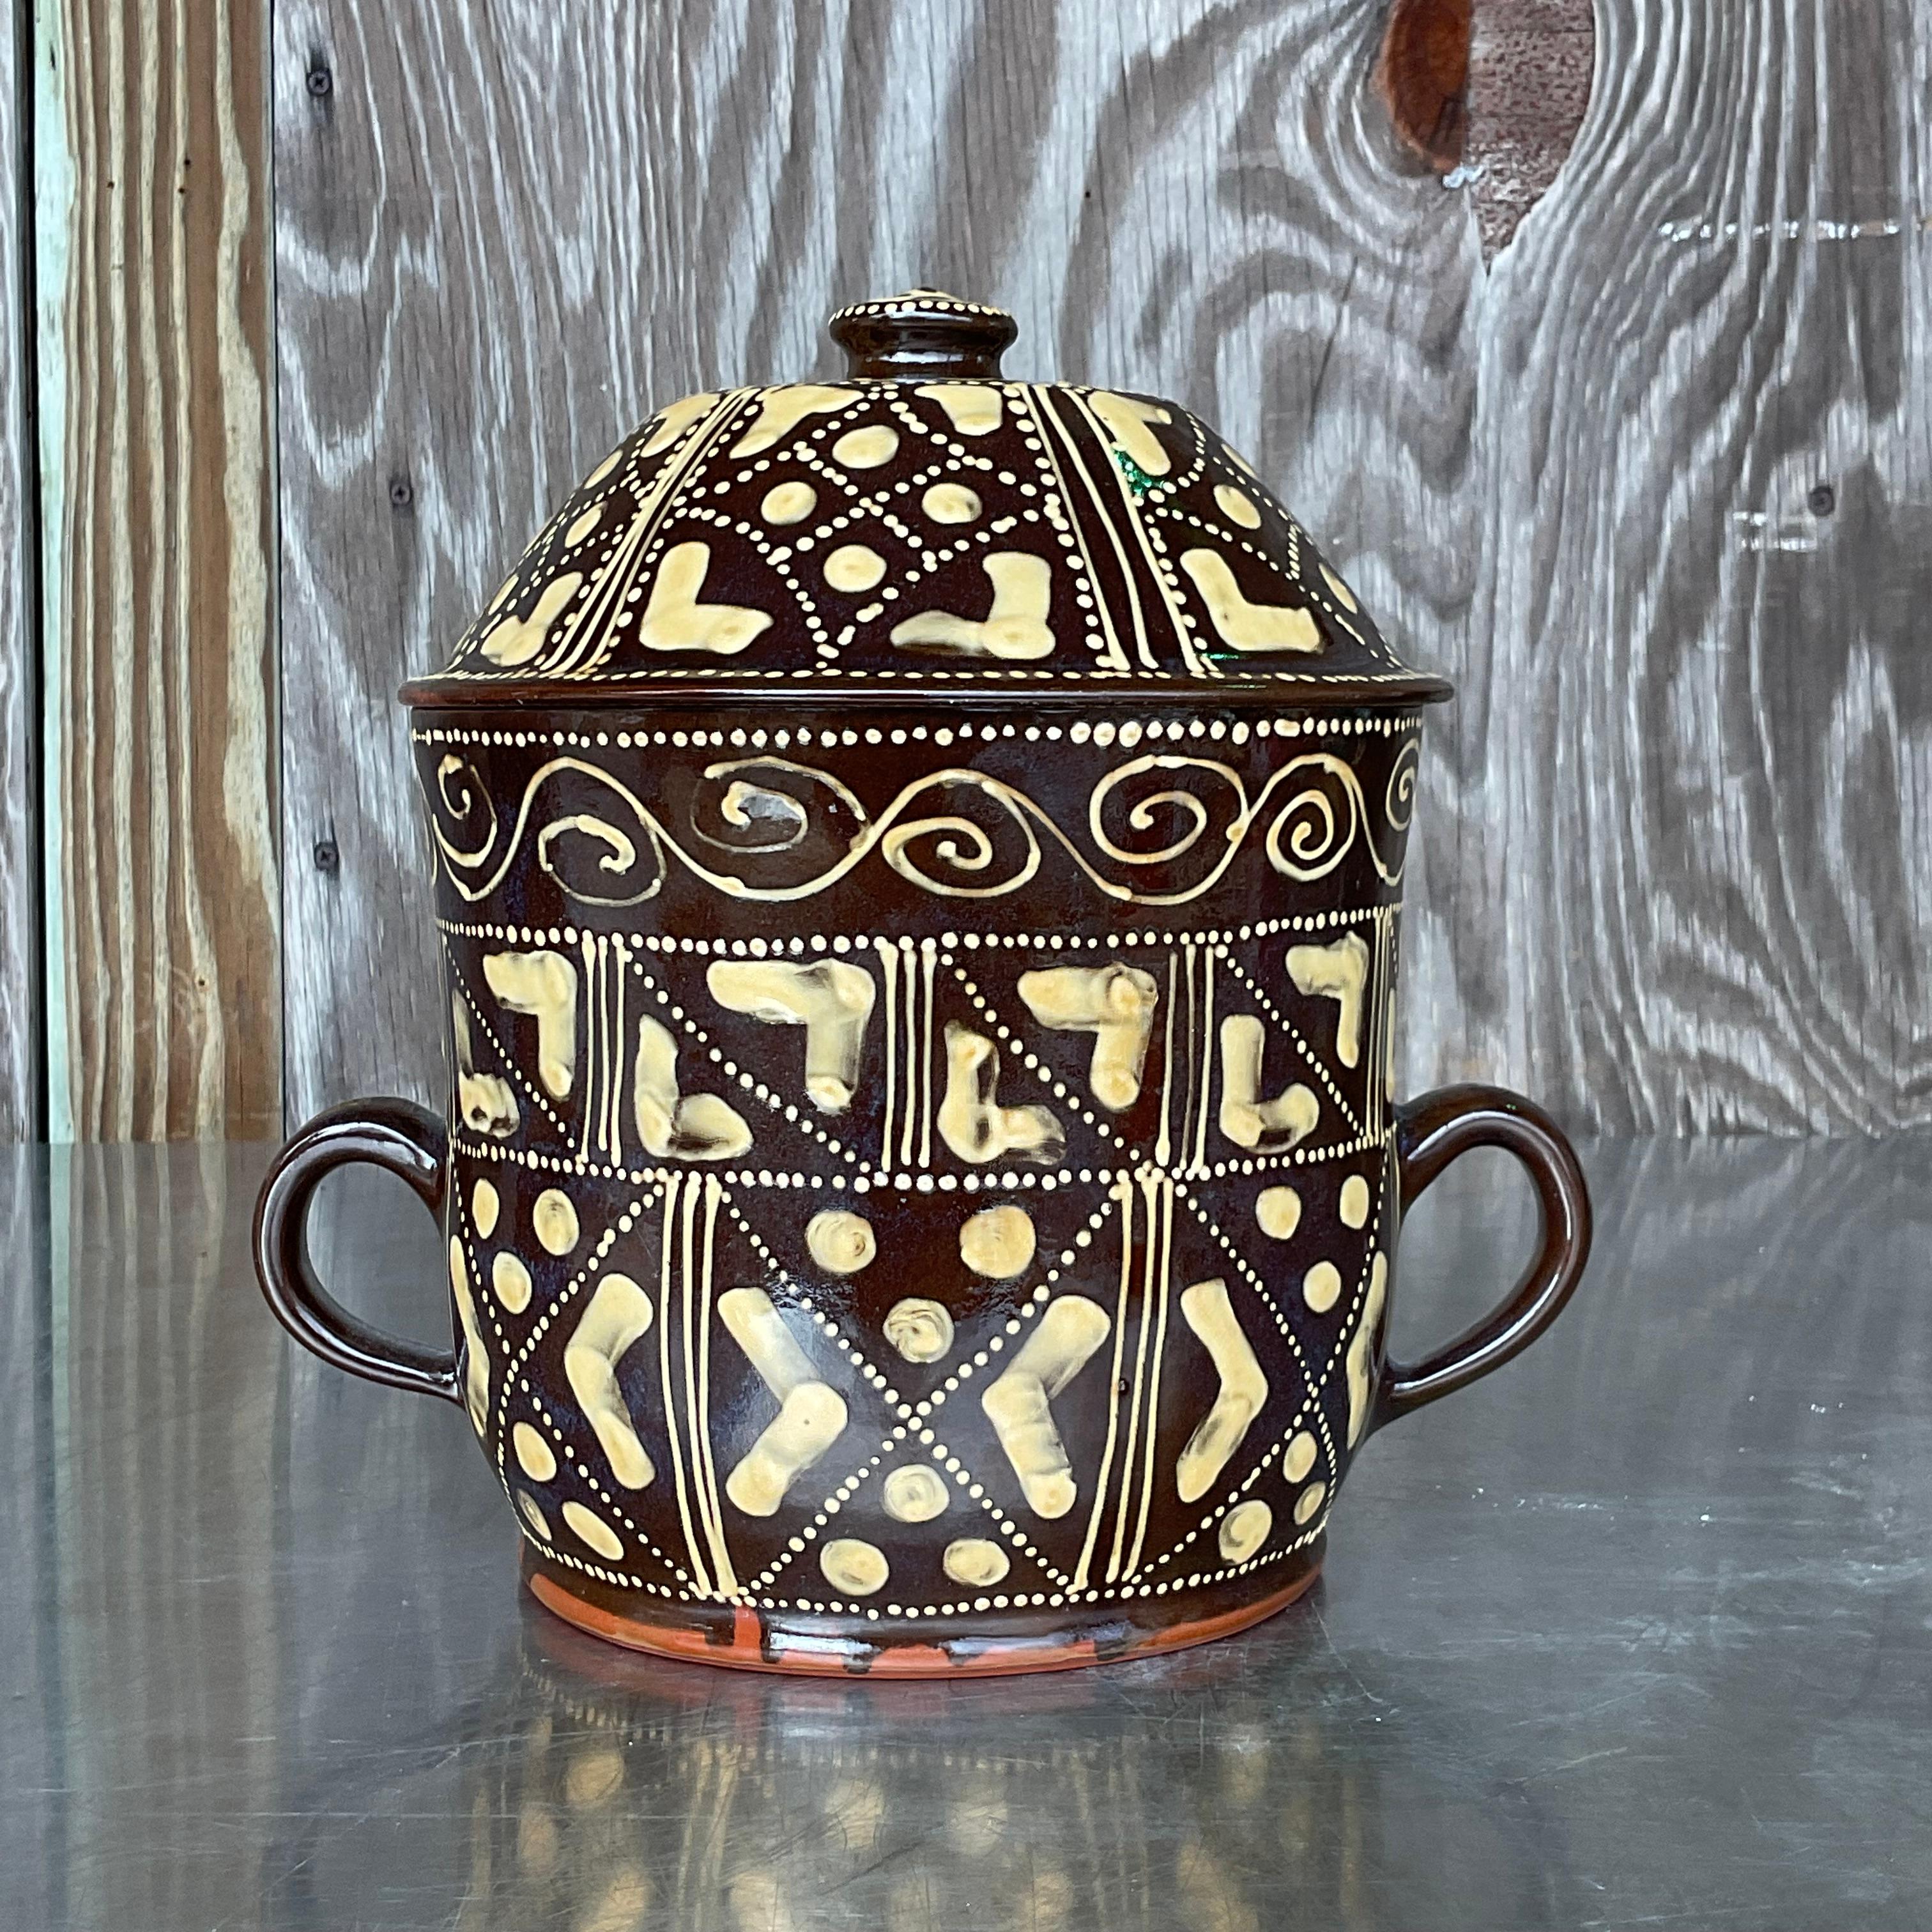 Bringen Sie einen Hauch von Laune in Ihre Teestunde mit unserem Vintage Boho Hand Painted Ceramic Chocolate Pot. Mit künstlerischem Flair und böhmischem Charme gefertigt, bringt dieses exquisite Stück Farbe und Persönlichkeit auf Ihren Tisch. Machen